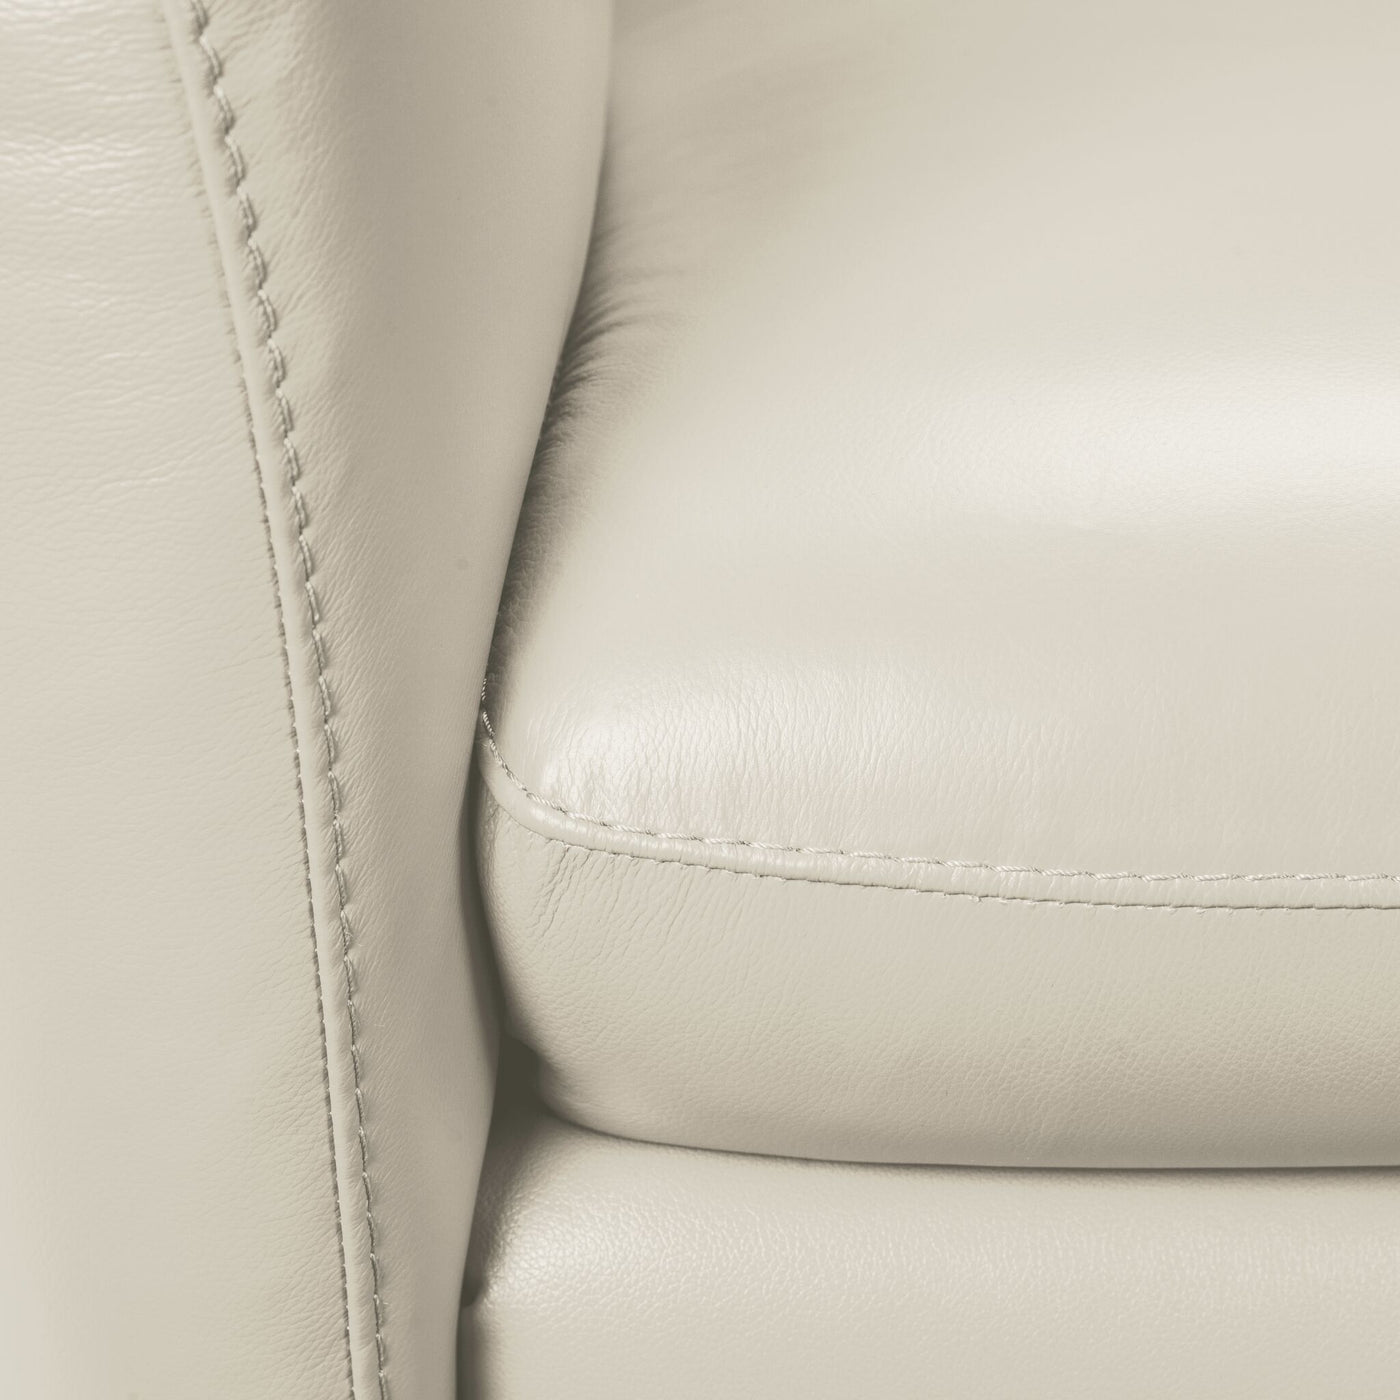 Carlino Leather Sofa - Silver